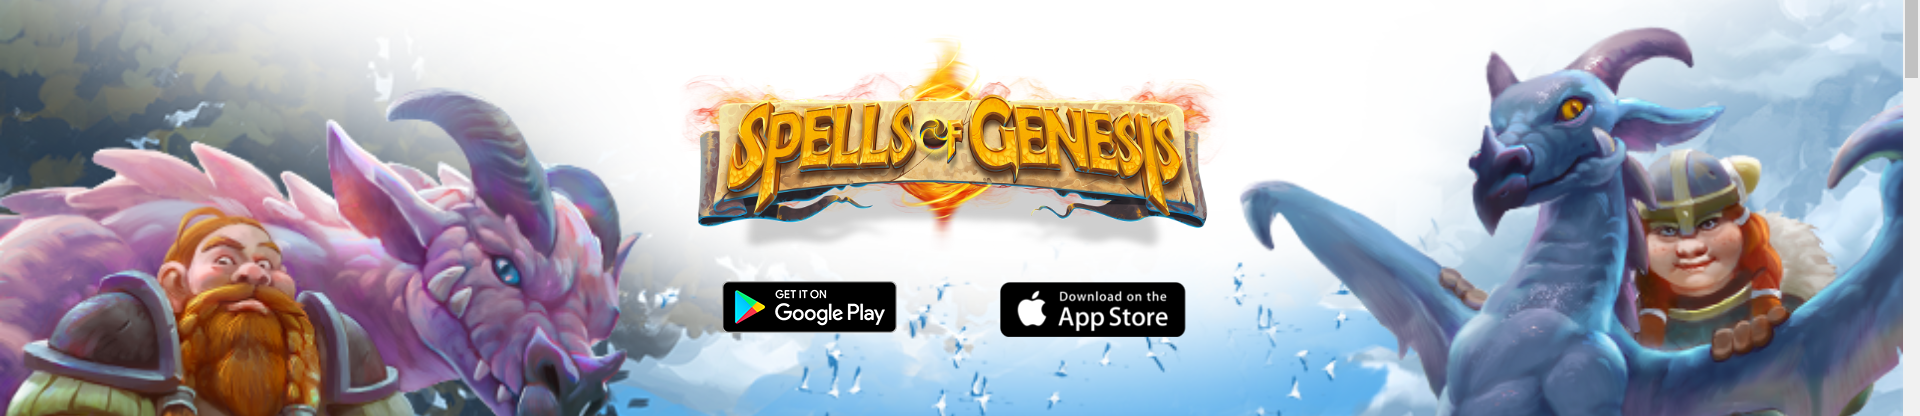 spells of genesis NFT